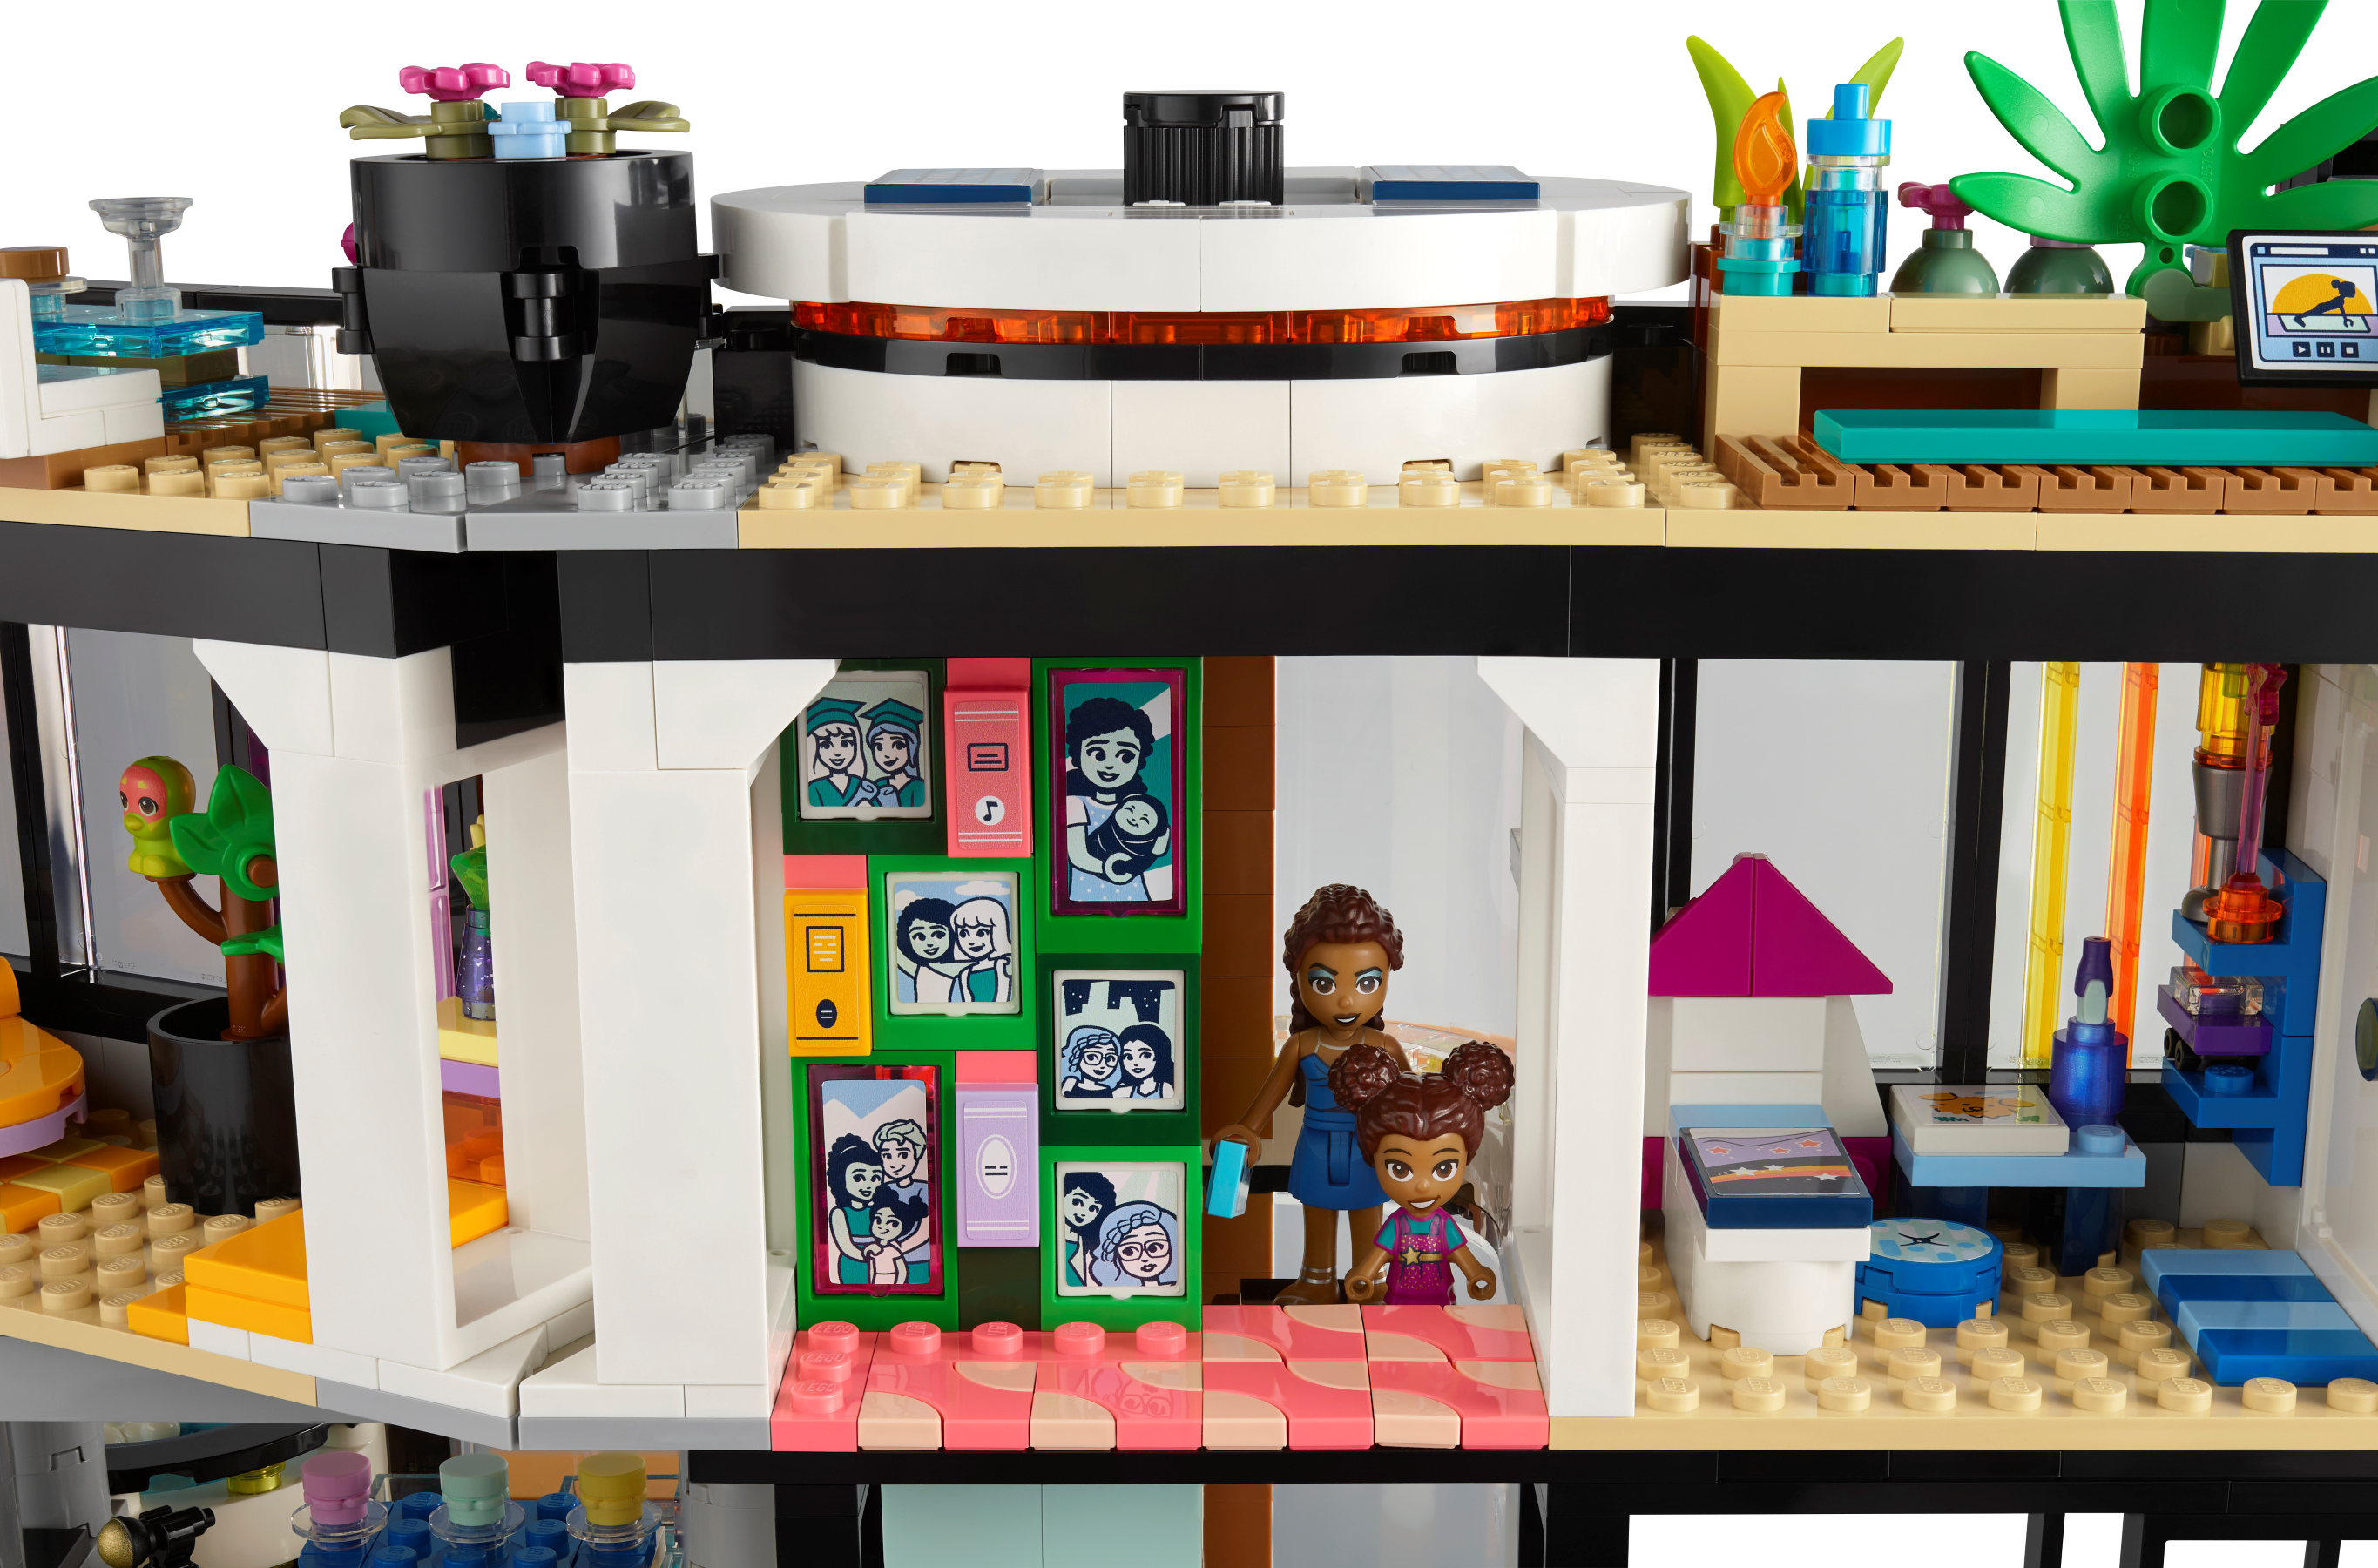 LEGO® Friends 3938 La maison du lapin d'Andrea - Lego - Achat & prix